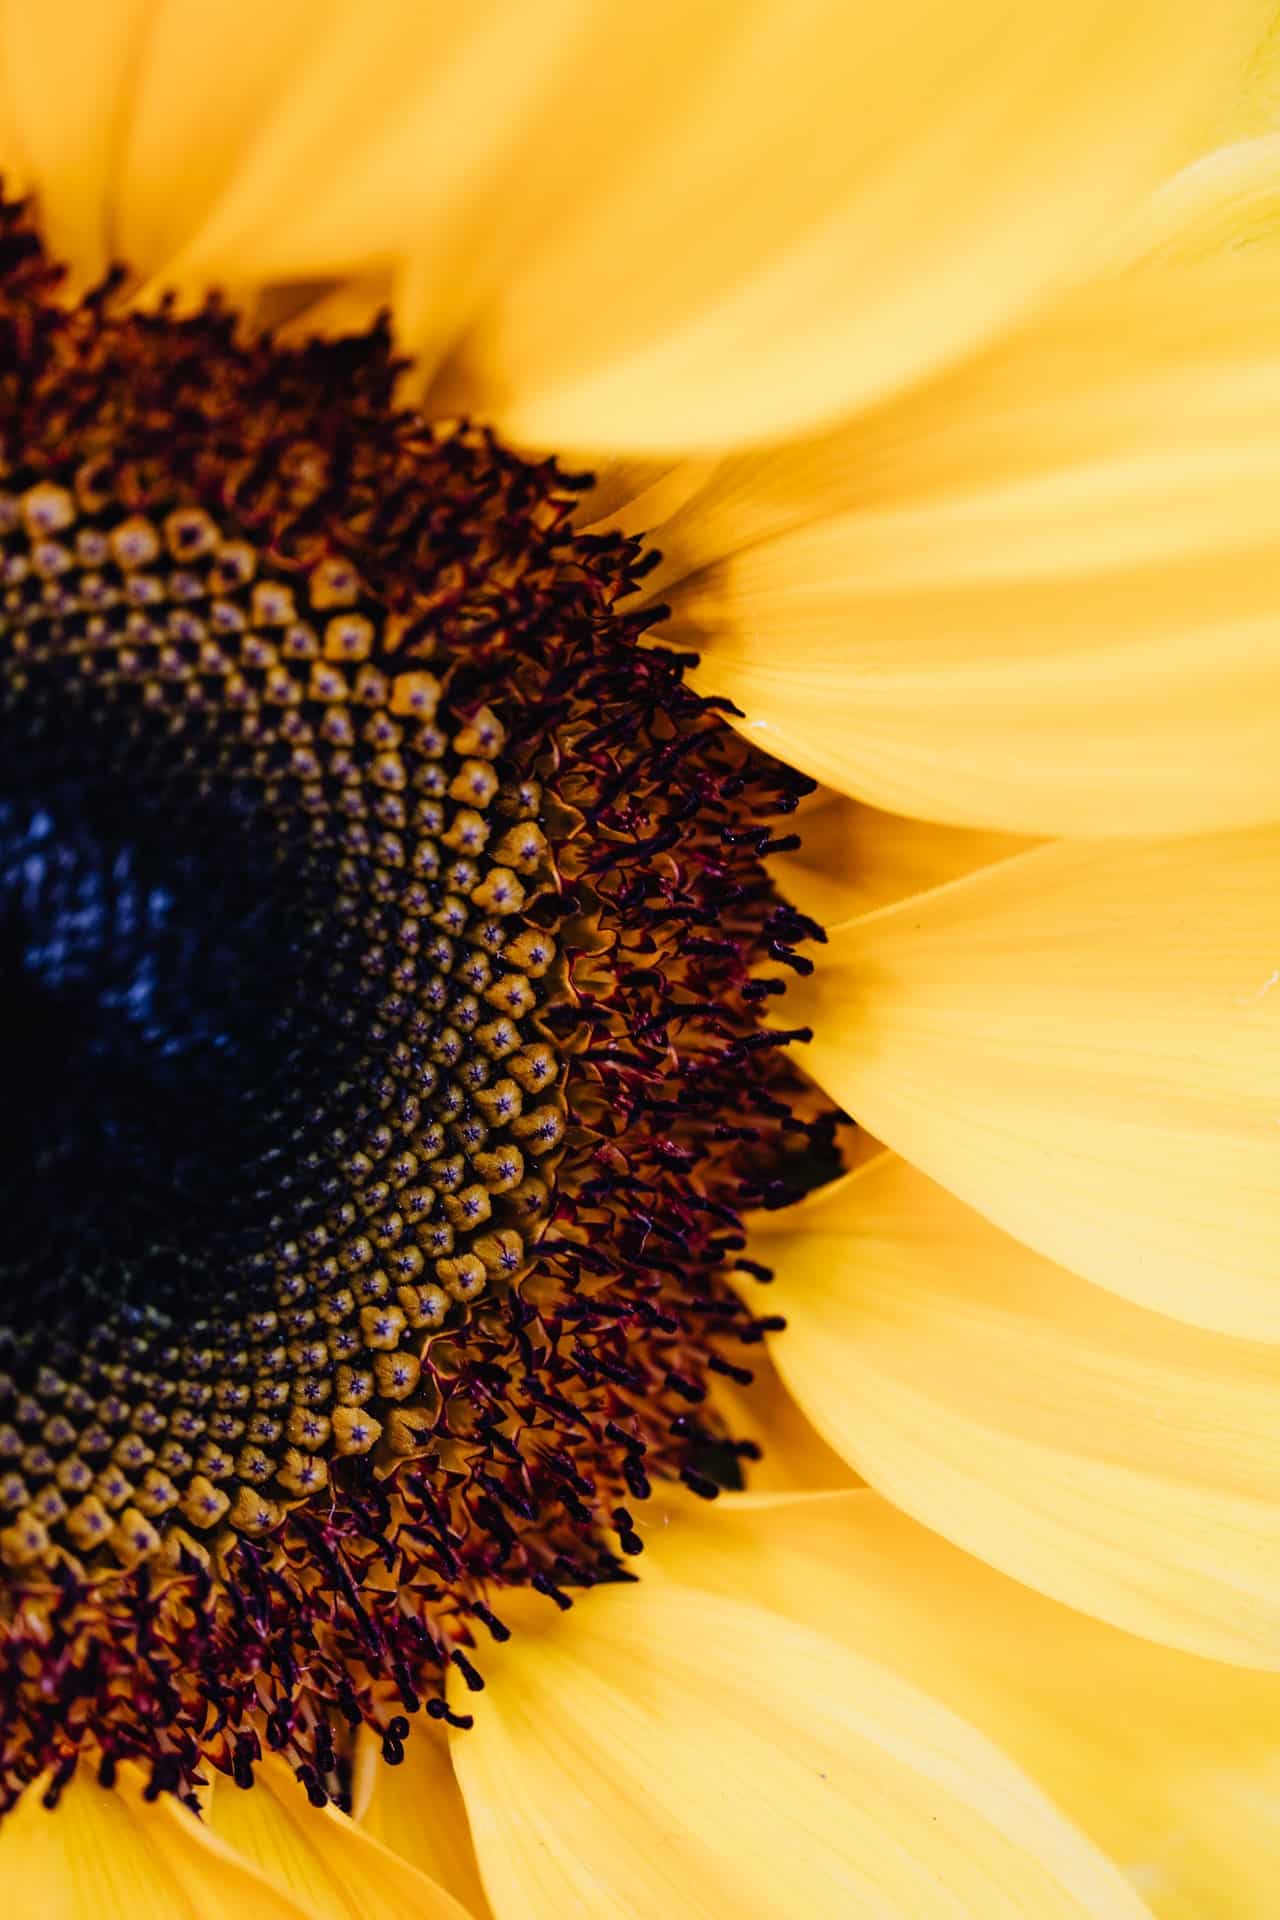 sunflower macro photo